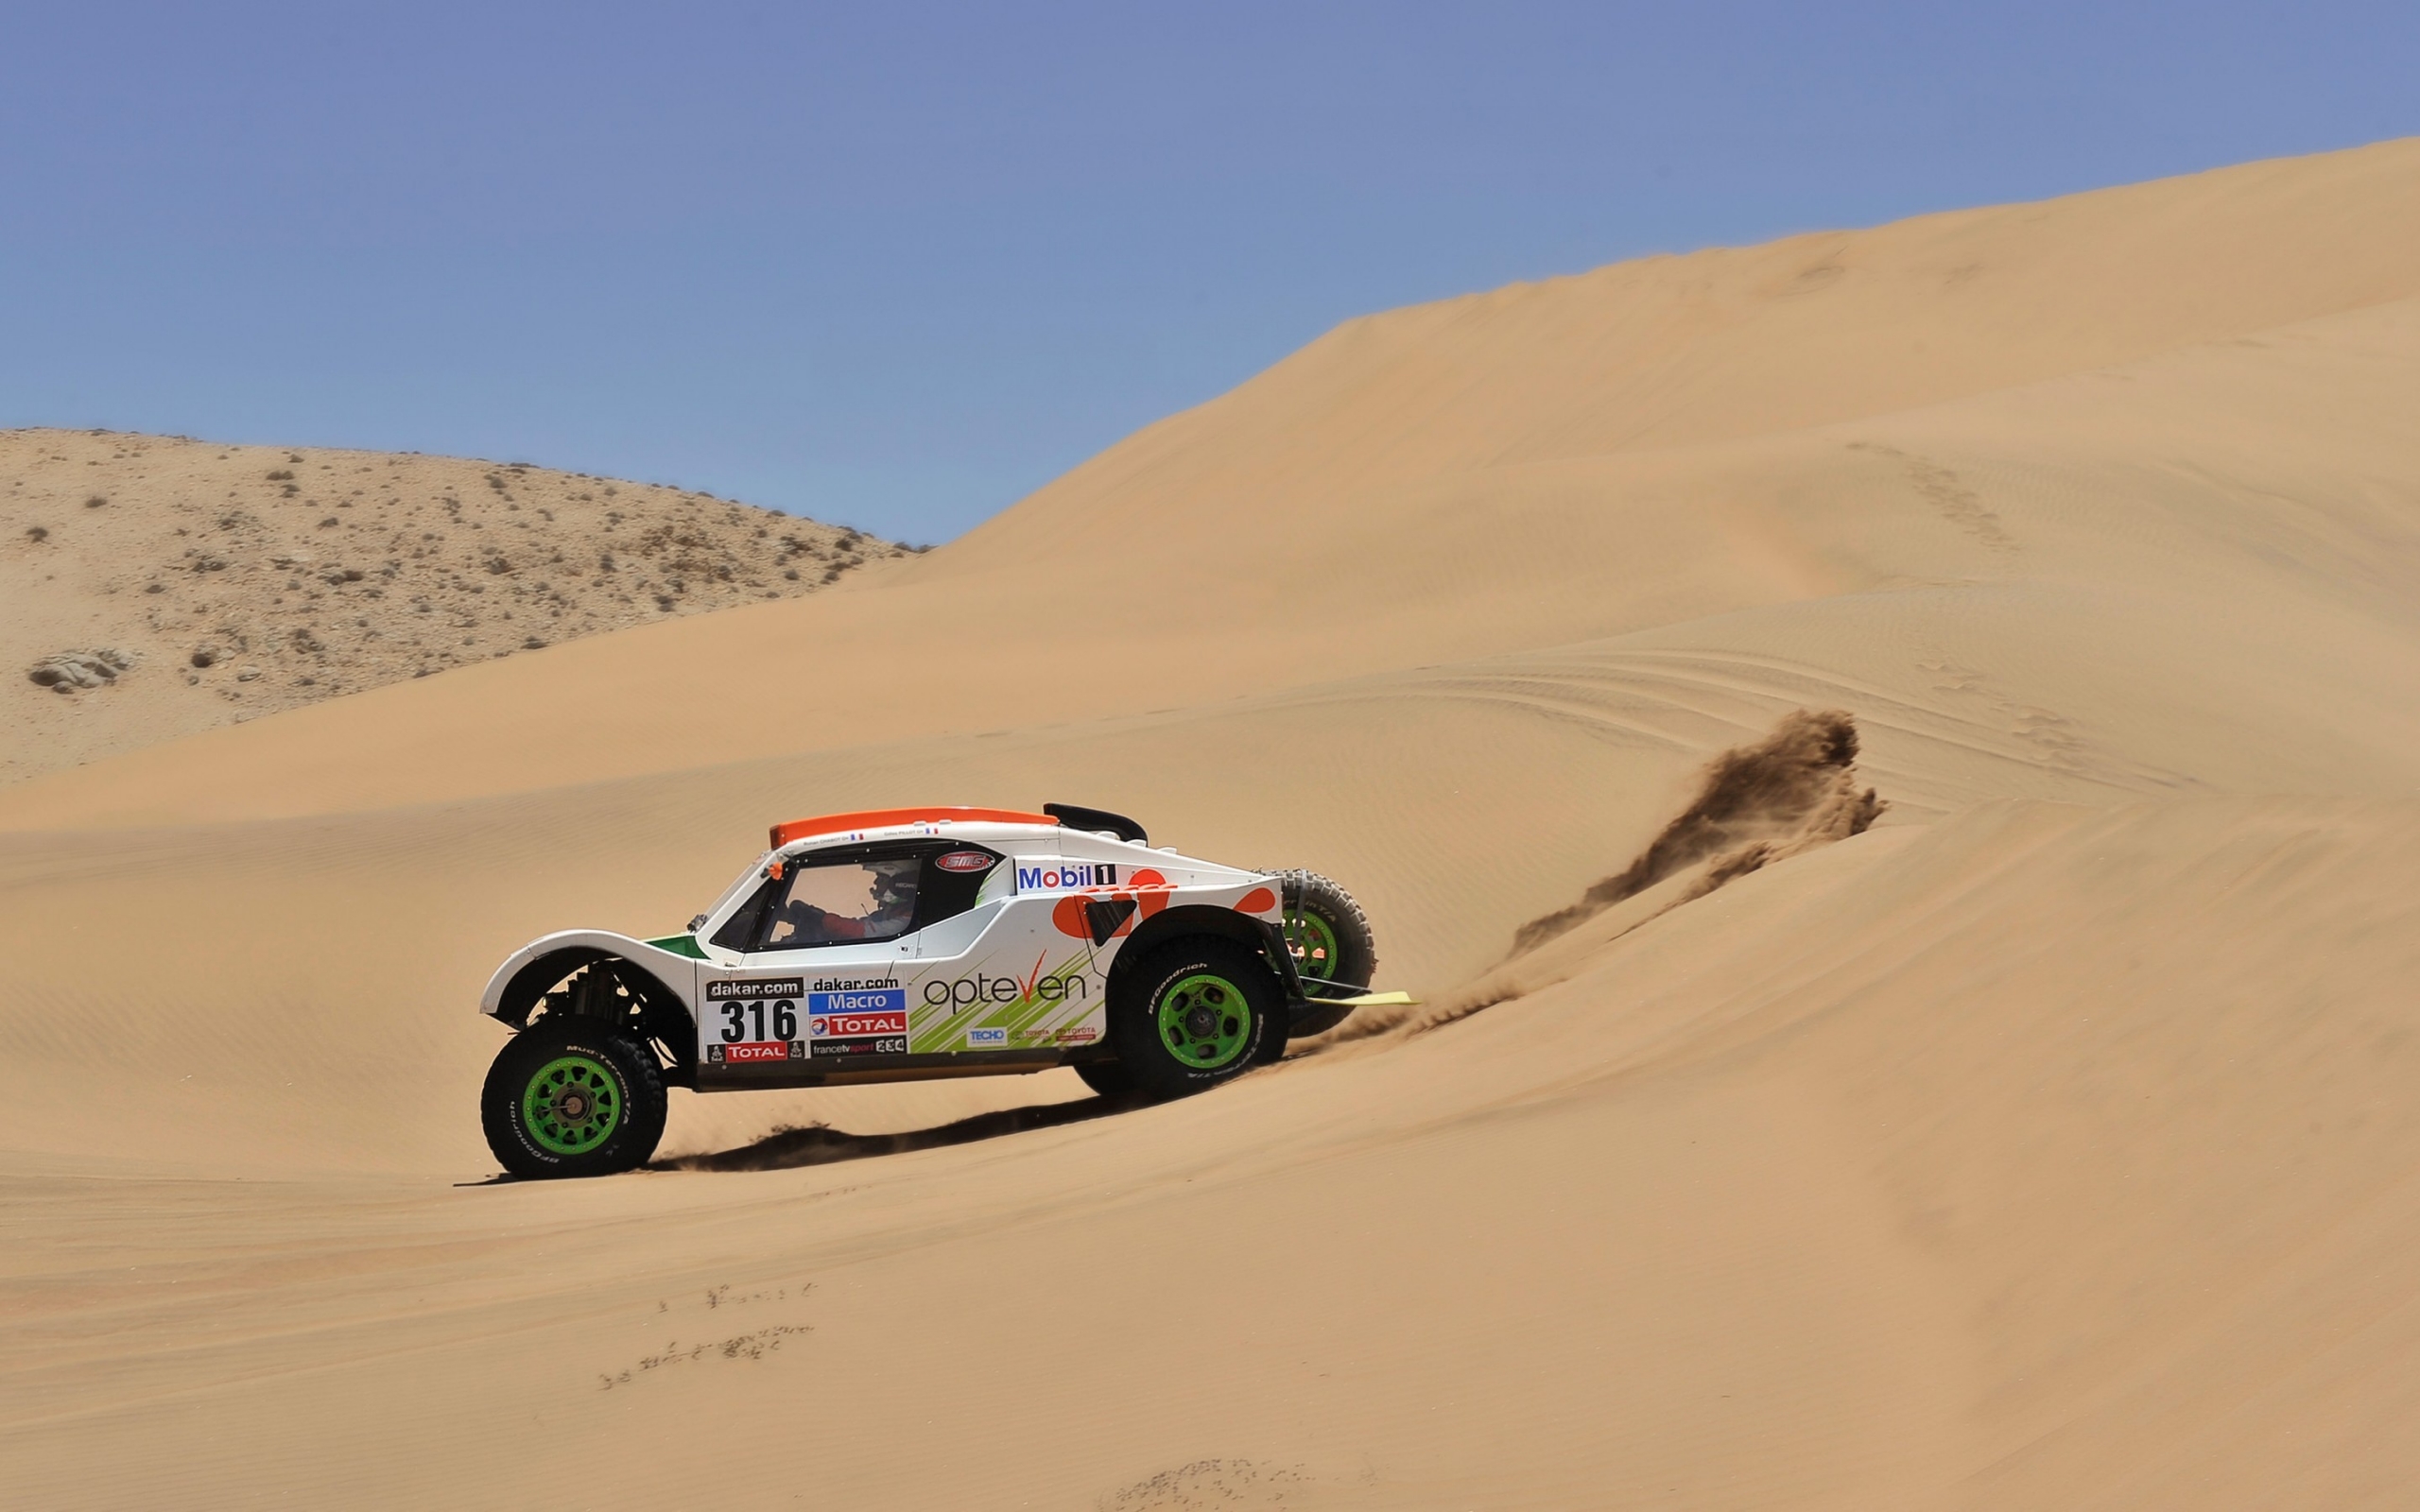 Rally Desert Race for 2560 x 1600 widescreen resolution